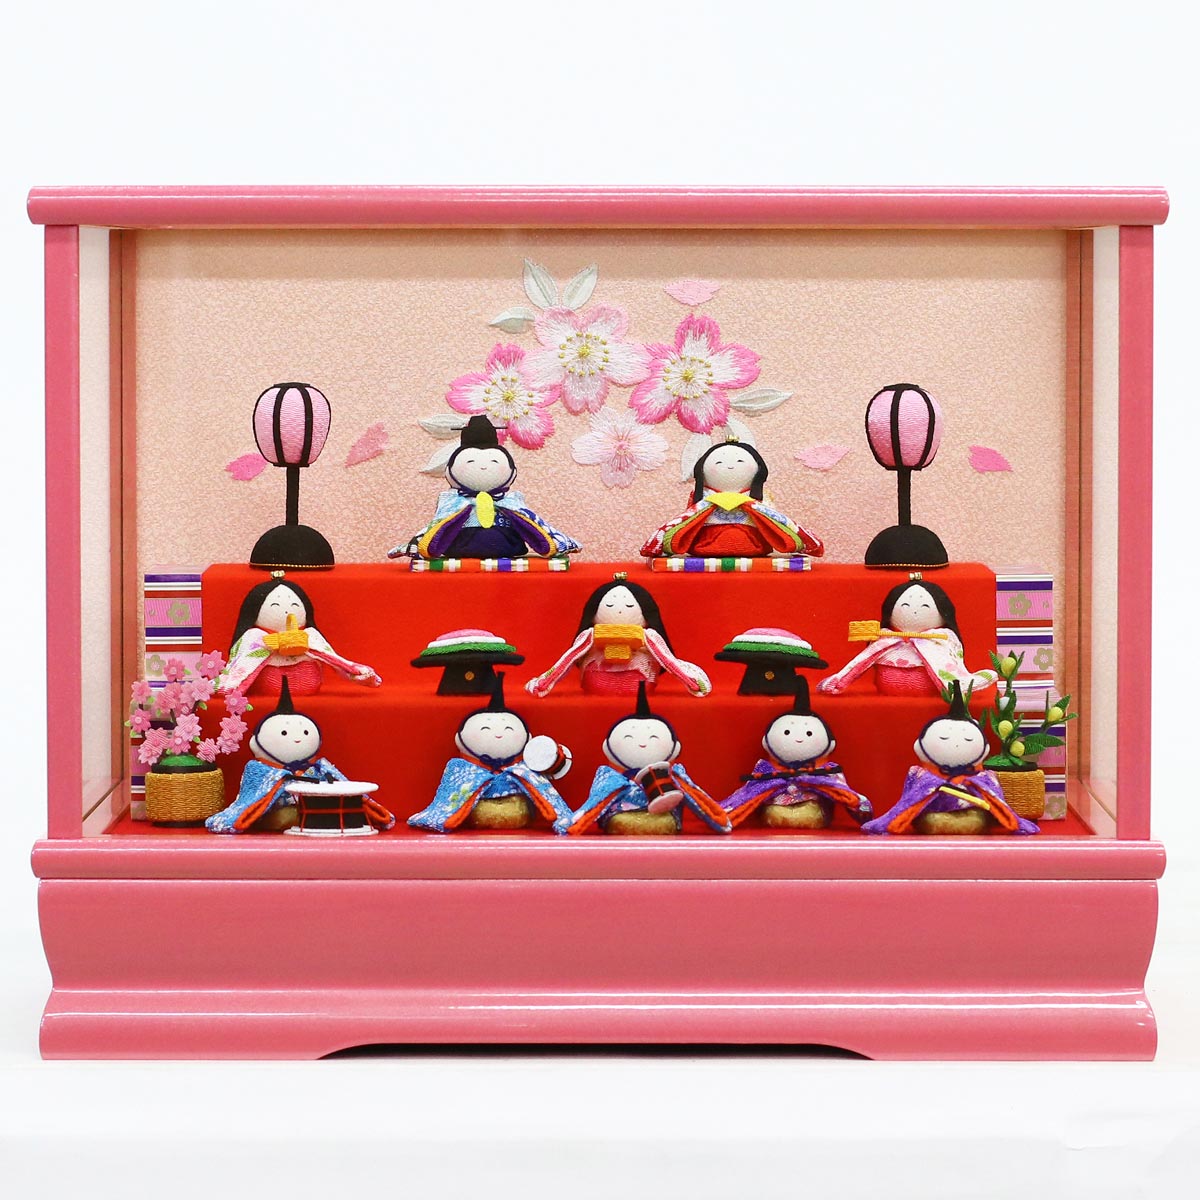 雛人形 コンパクト ちりめん雛 わらべ雛 10人揃いオルゴール付きケース飾り ピンク リュウコドウ HNRK-MRT-Eお雛様 …